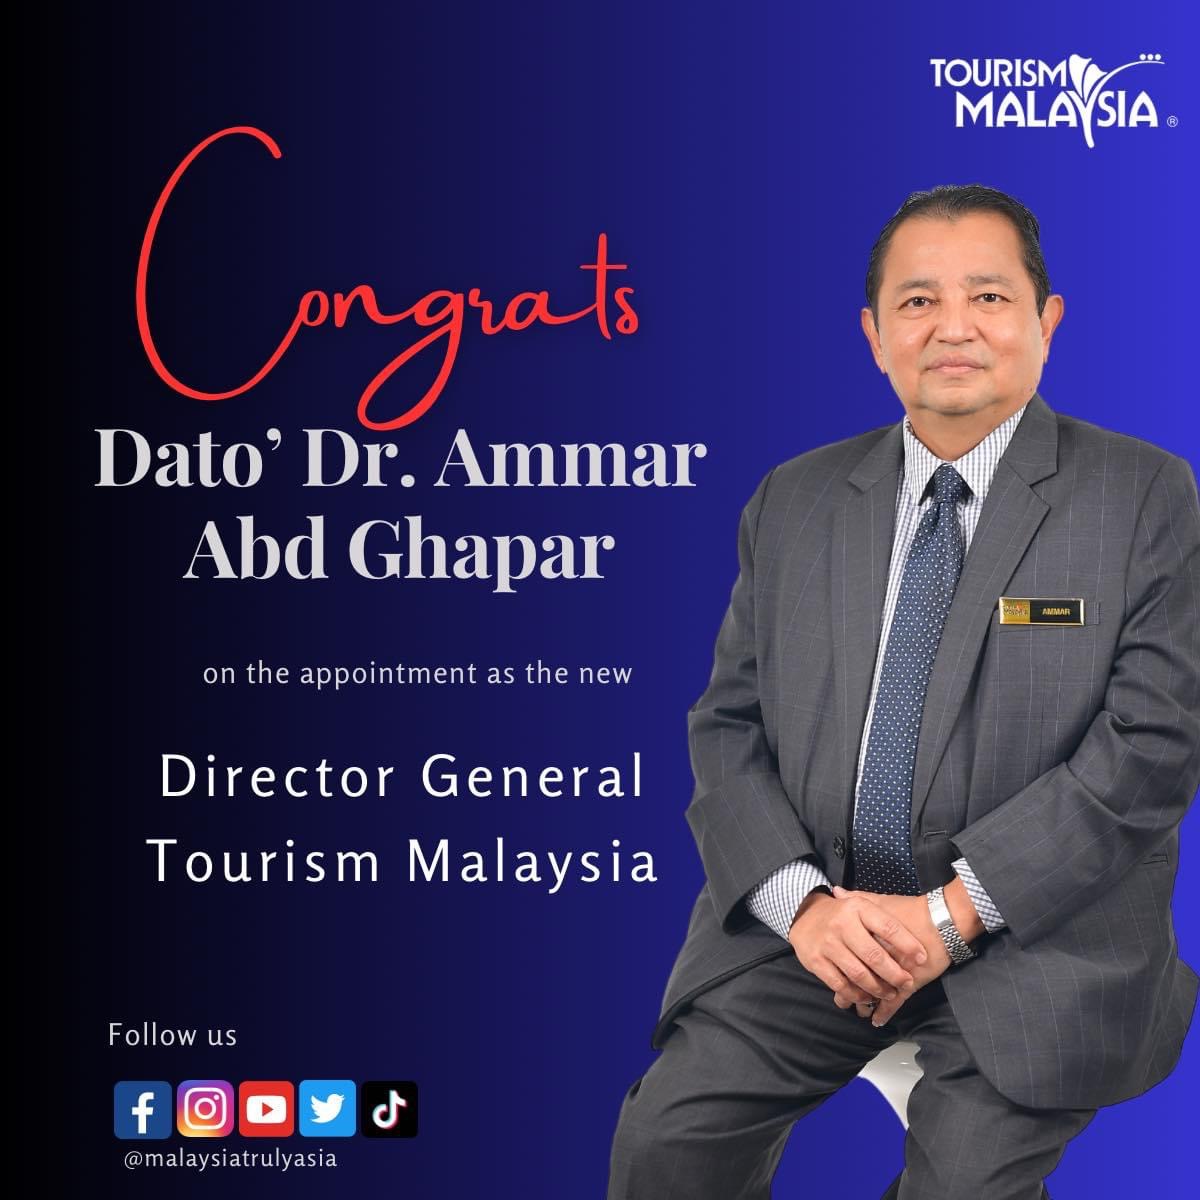 pengarah tourism malaysia wilayah timur